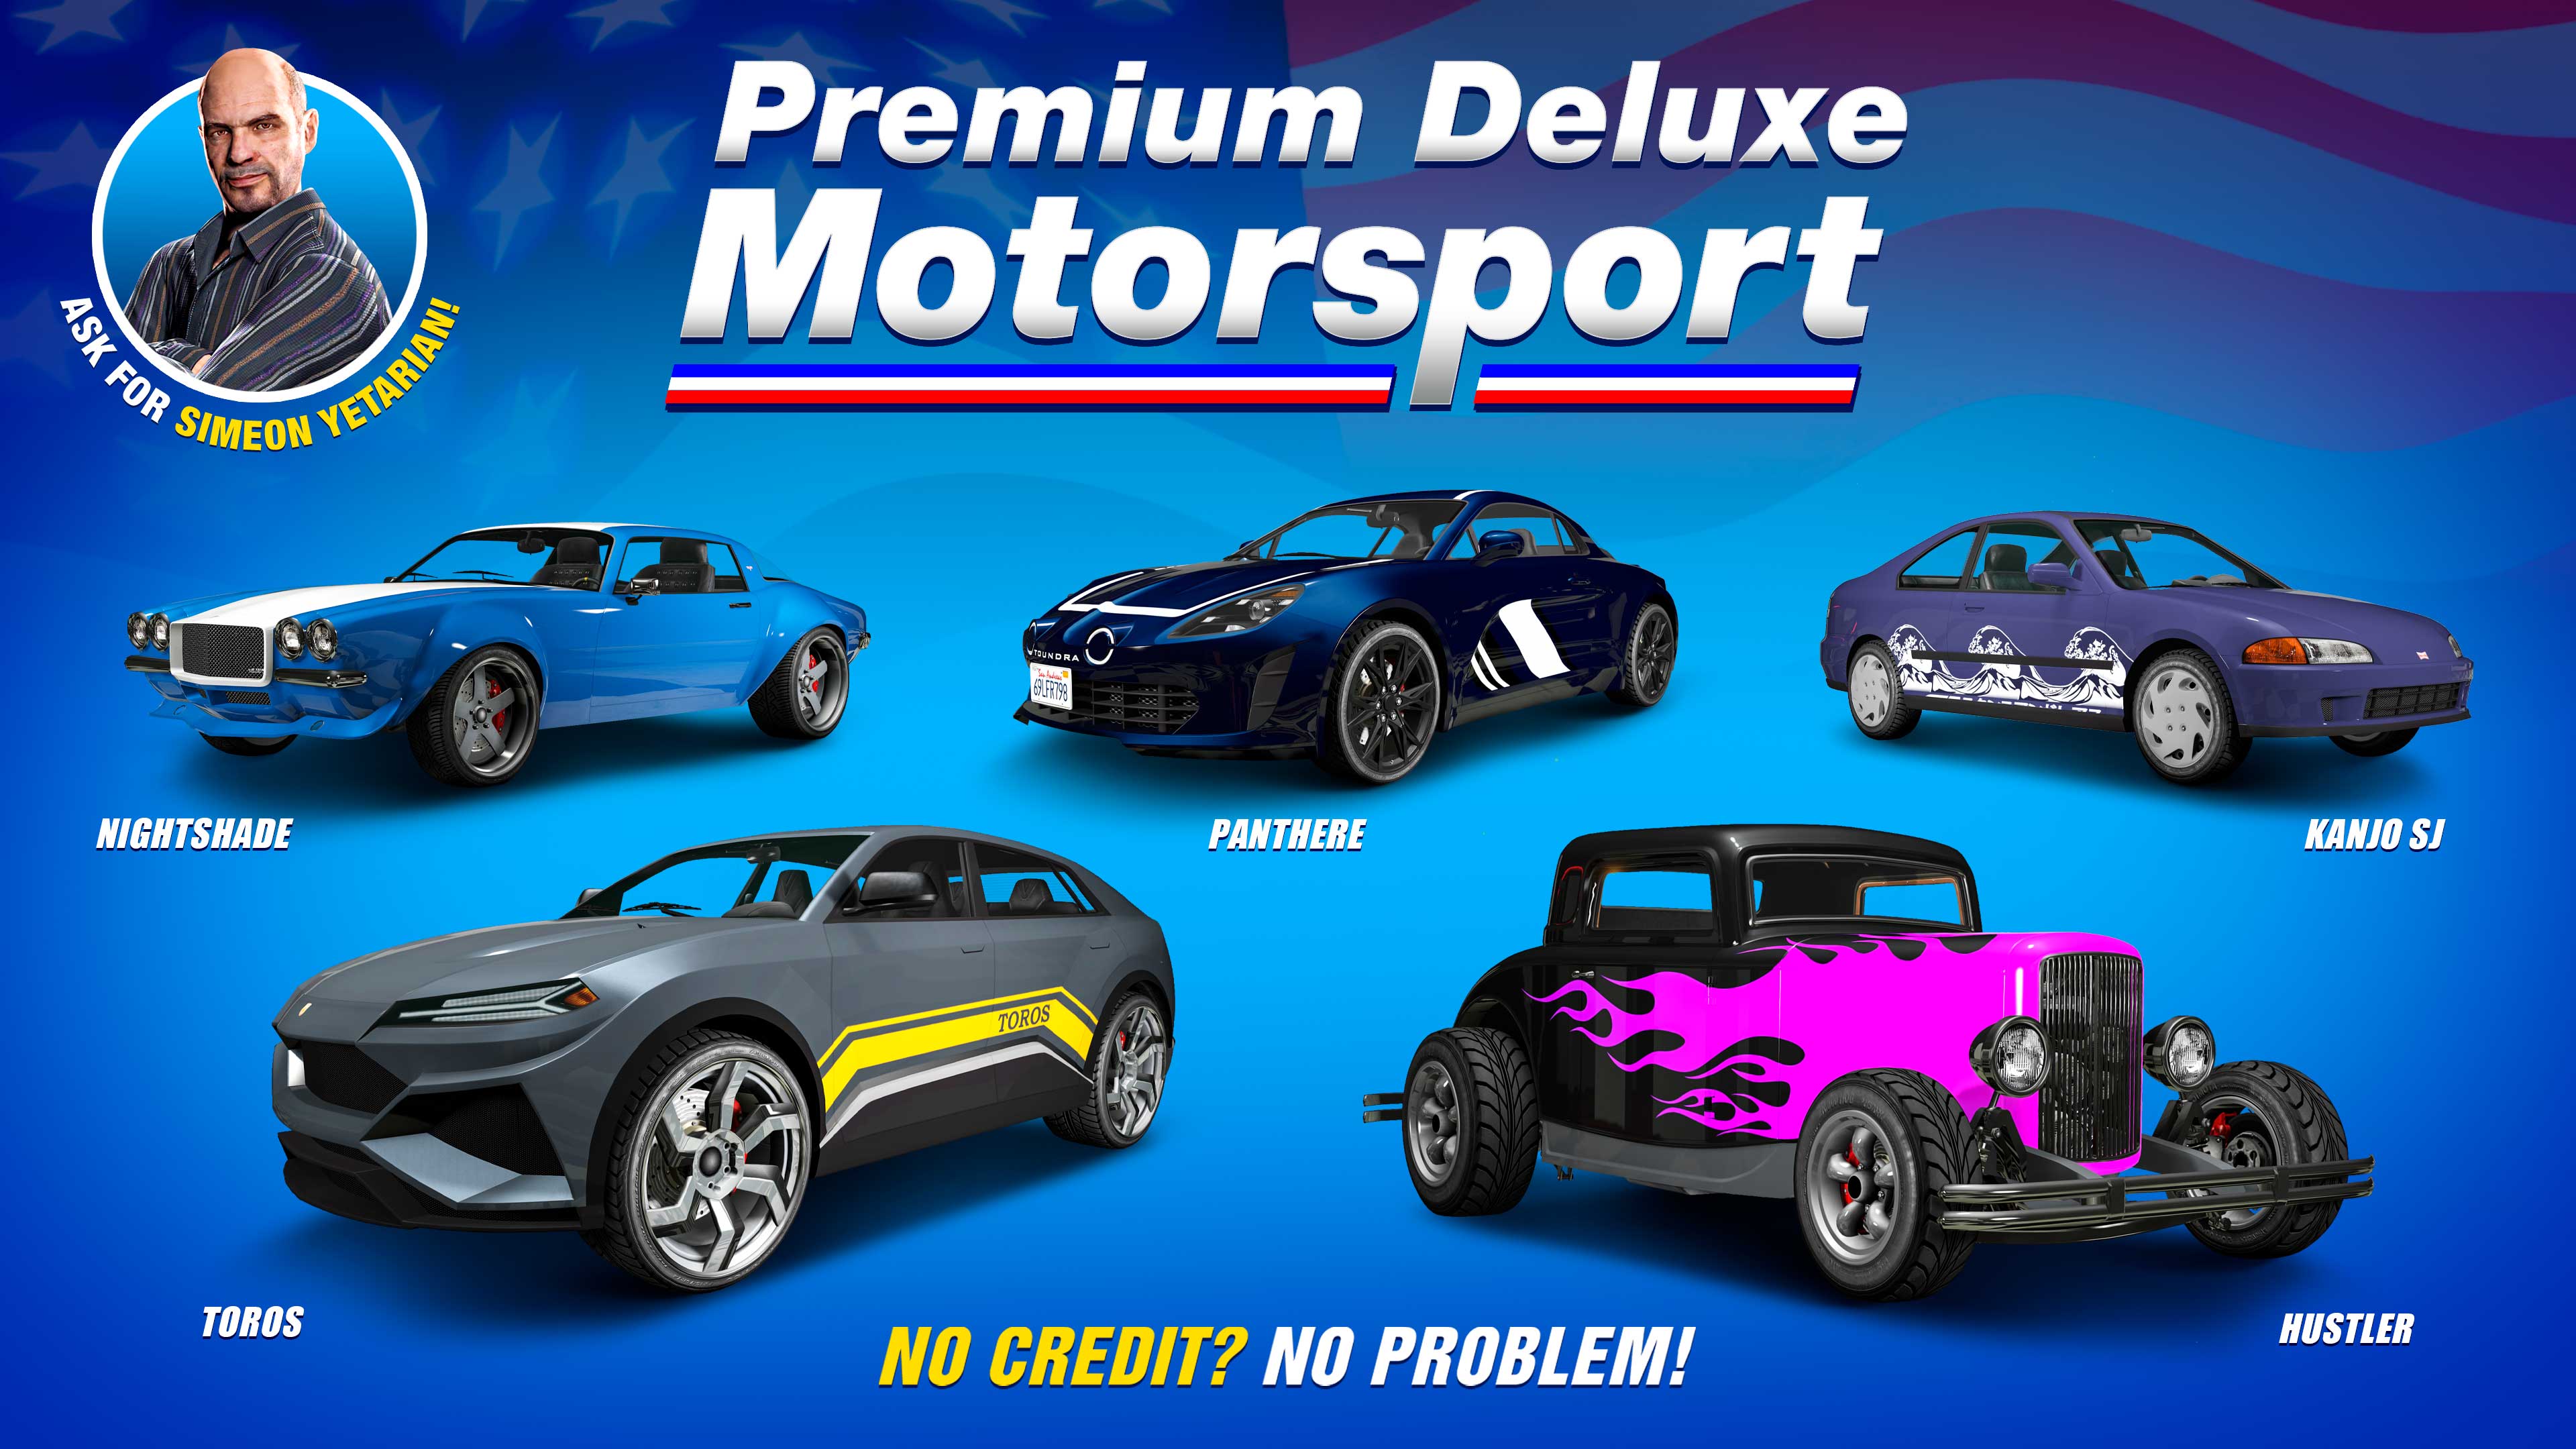 pôster da concessionária Premium Deluxe Motorsport